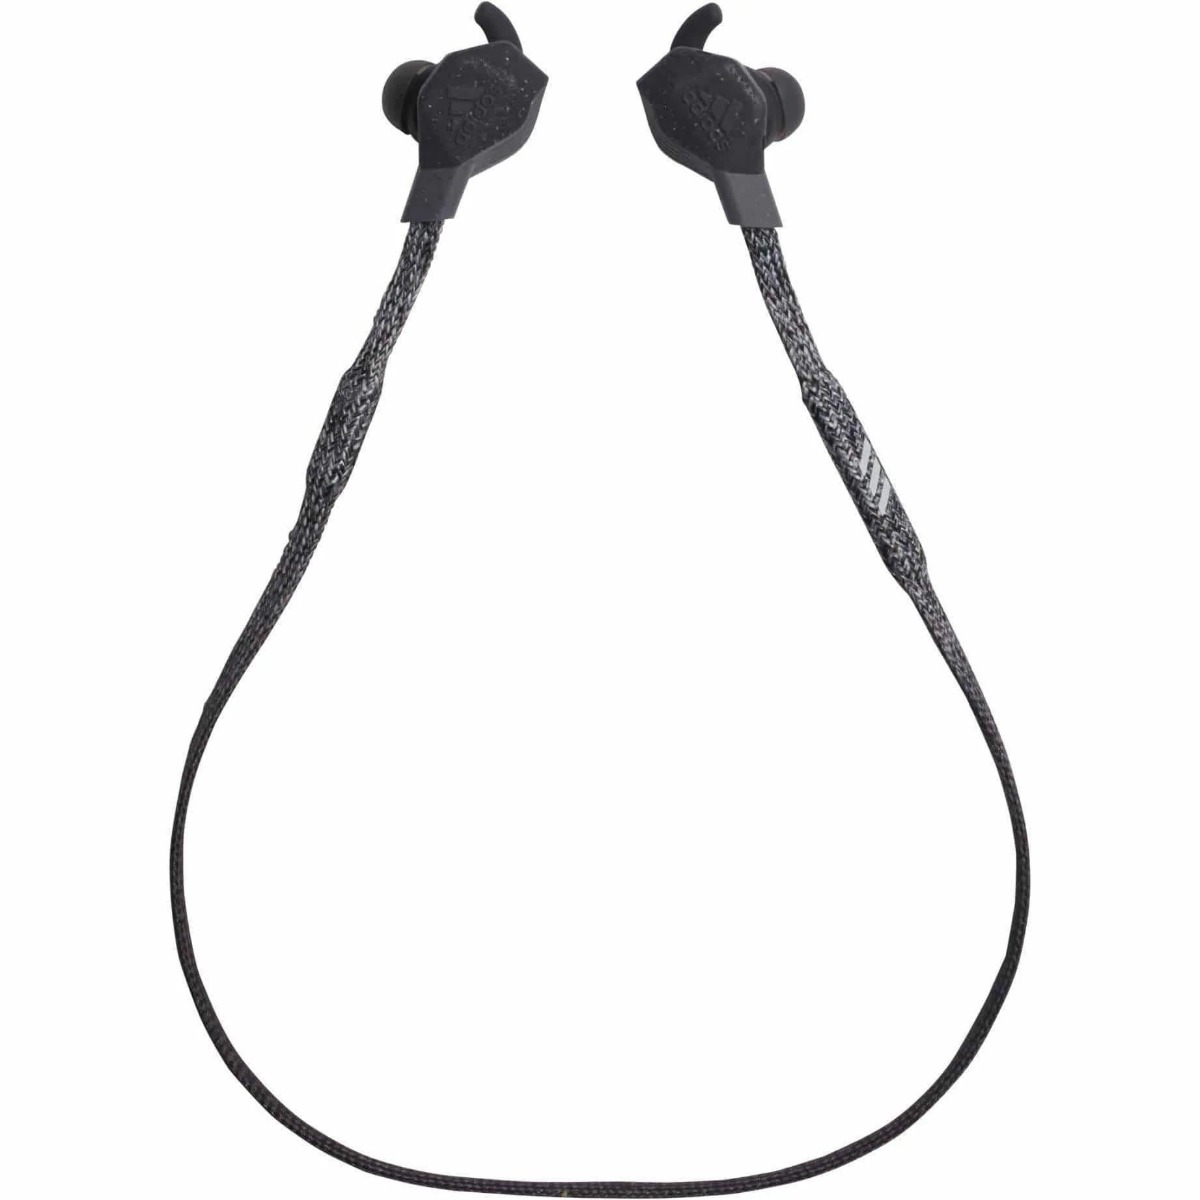 Casti In-ear Adidas Fwd-01, Wireless, Bluetooth, Gri Inchis